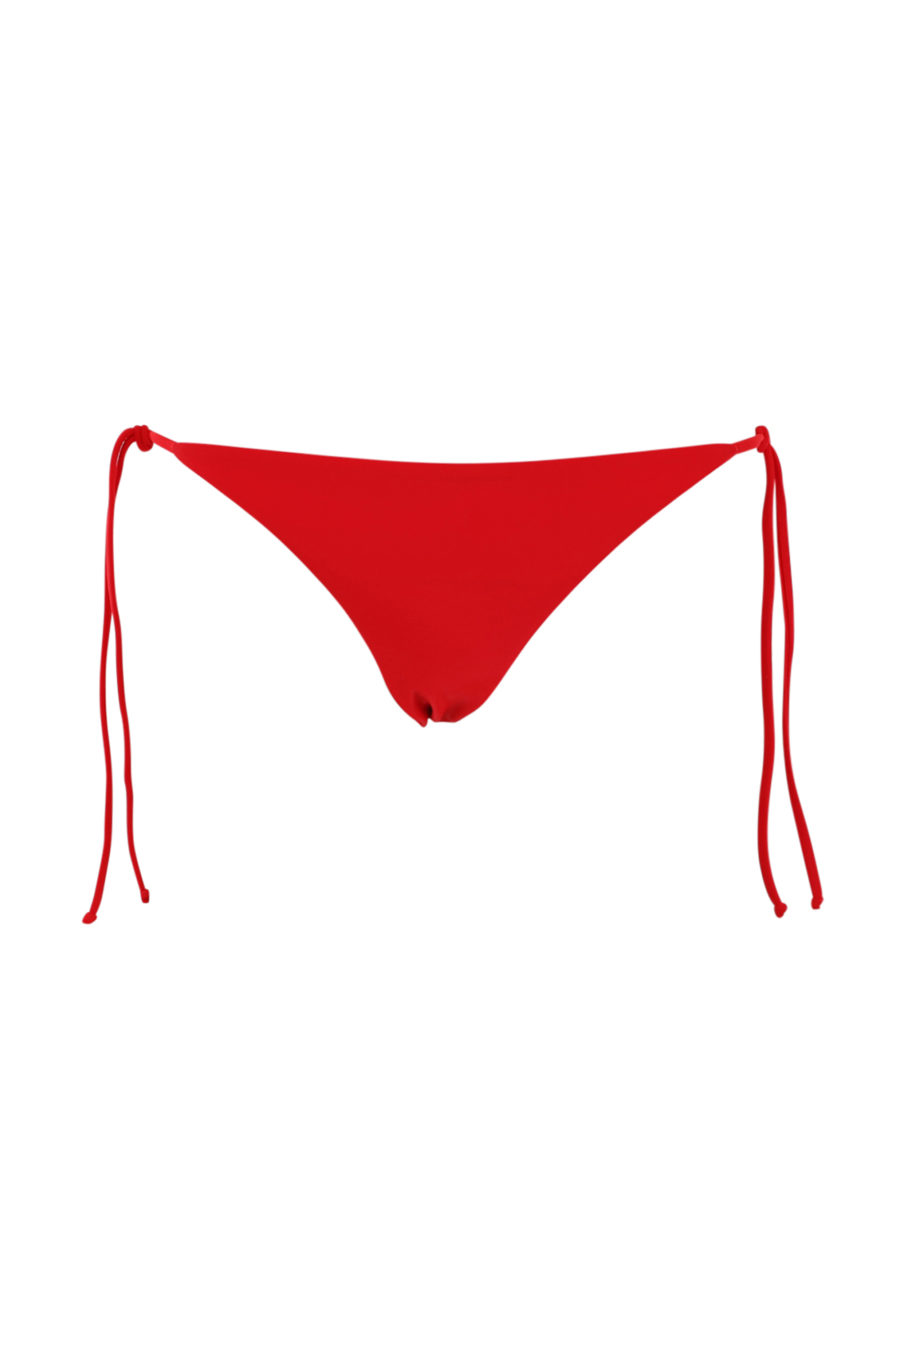 Bañador rojo con cordones y logo - IMG 0926